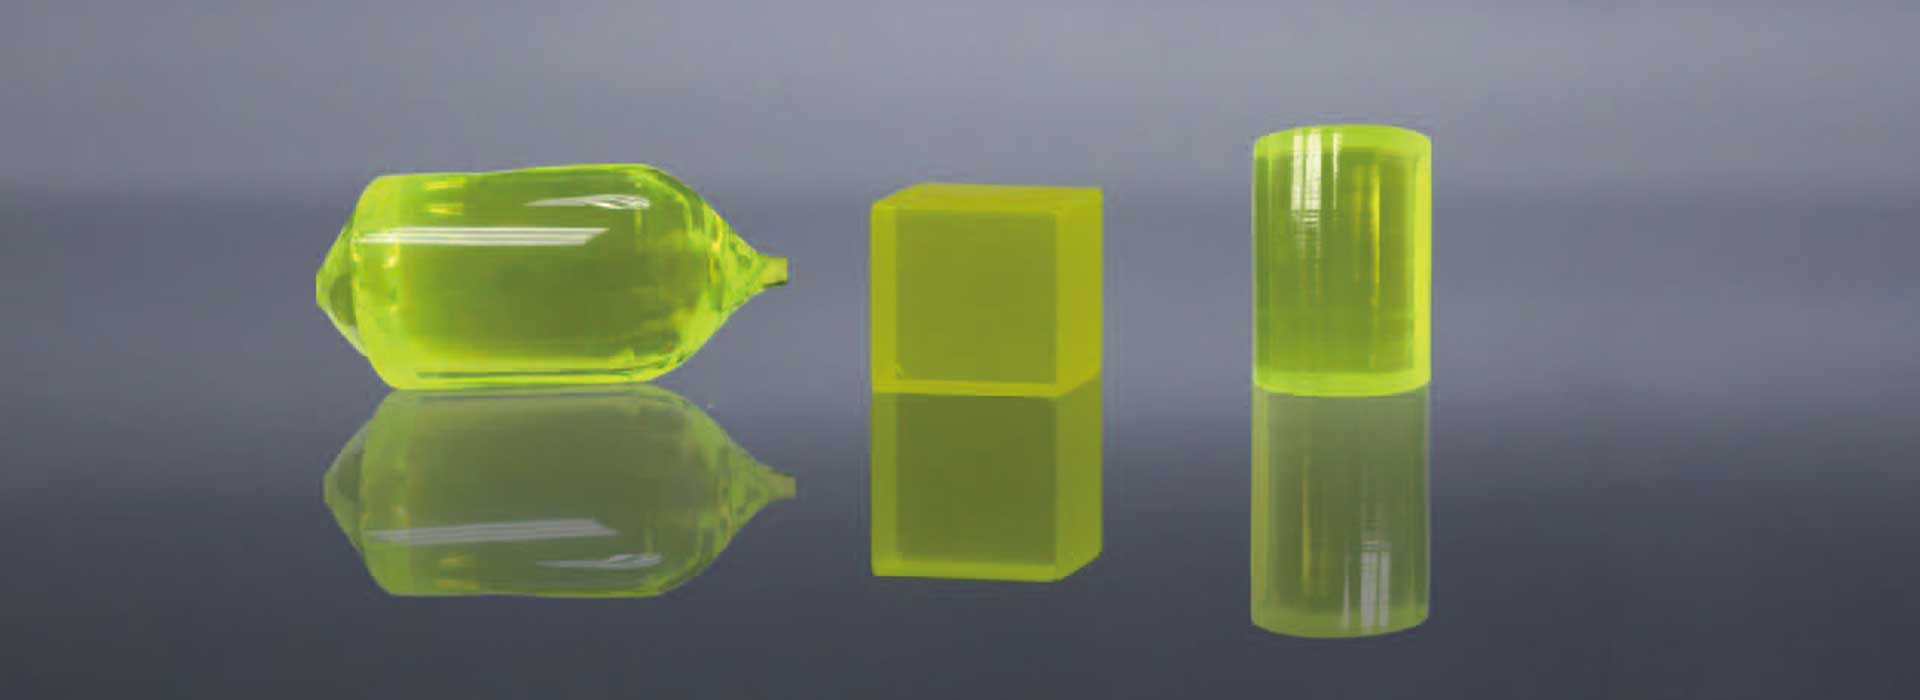 Ce：LuAG-crystal-scintillator-crystals